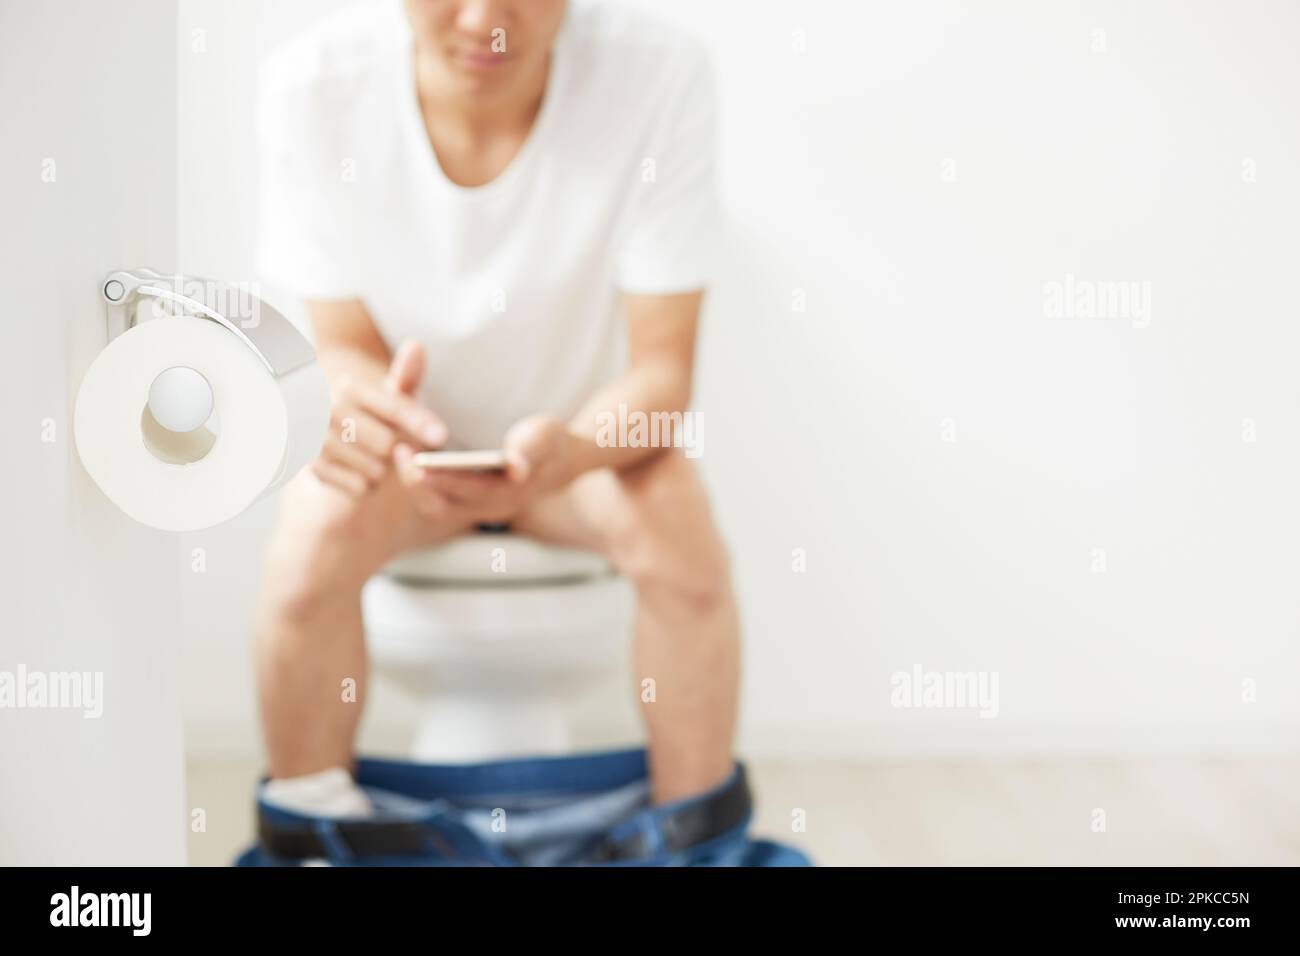 Toilettenpapier und ein Mann, der ein Handy bedient Stockfoto